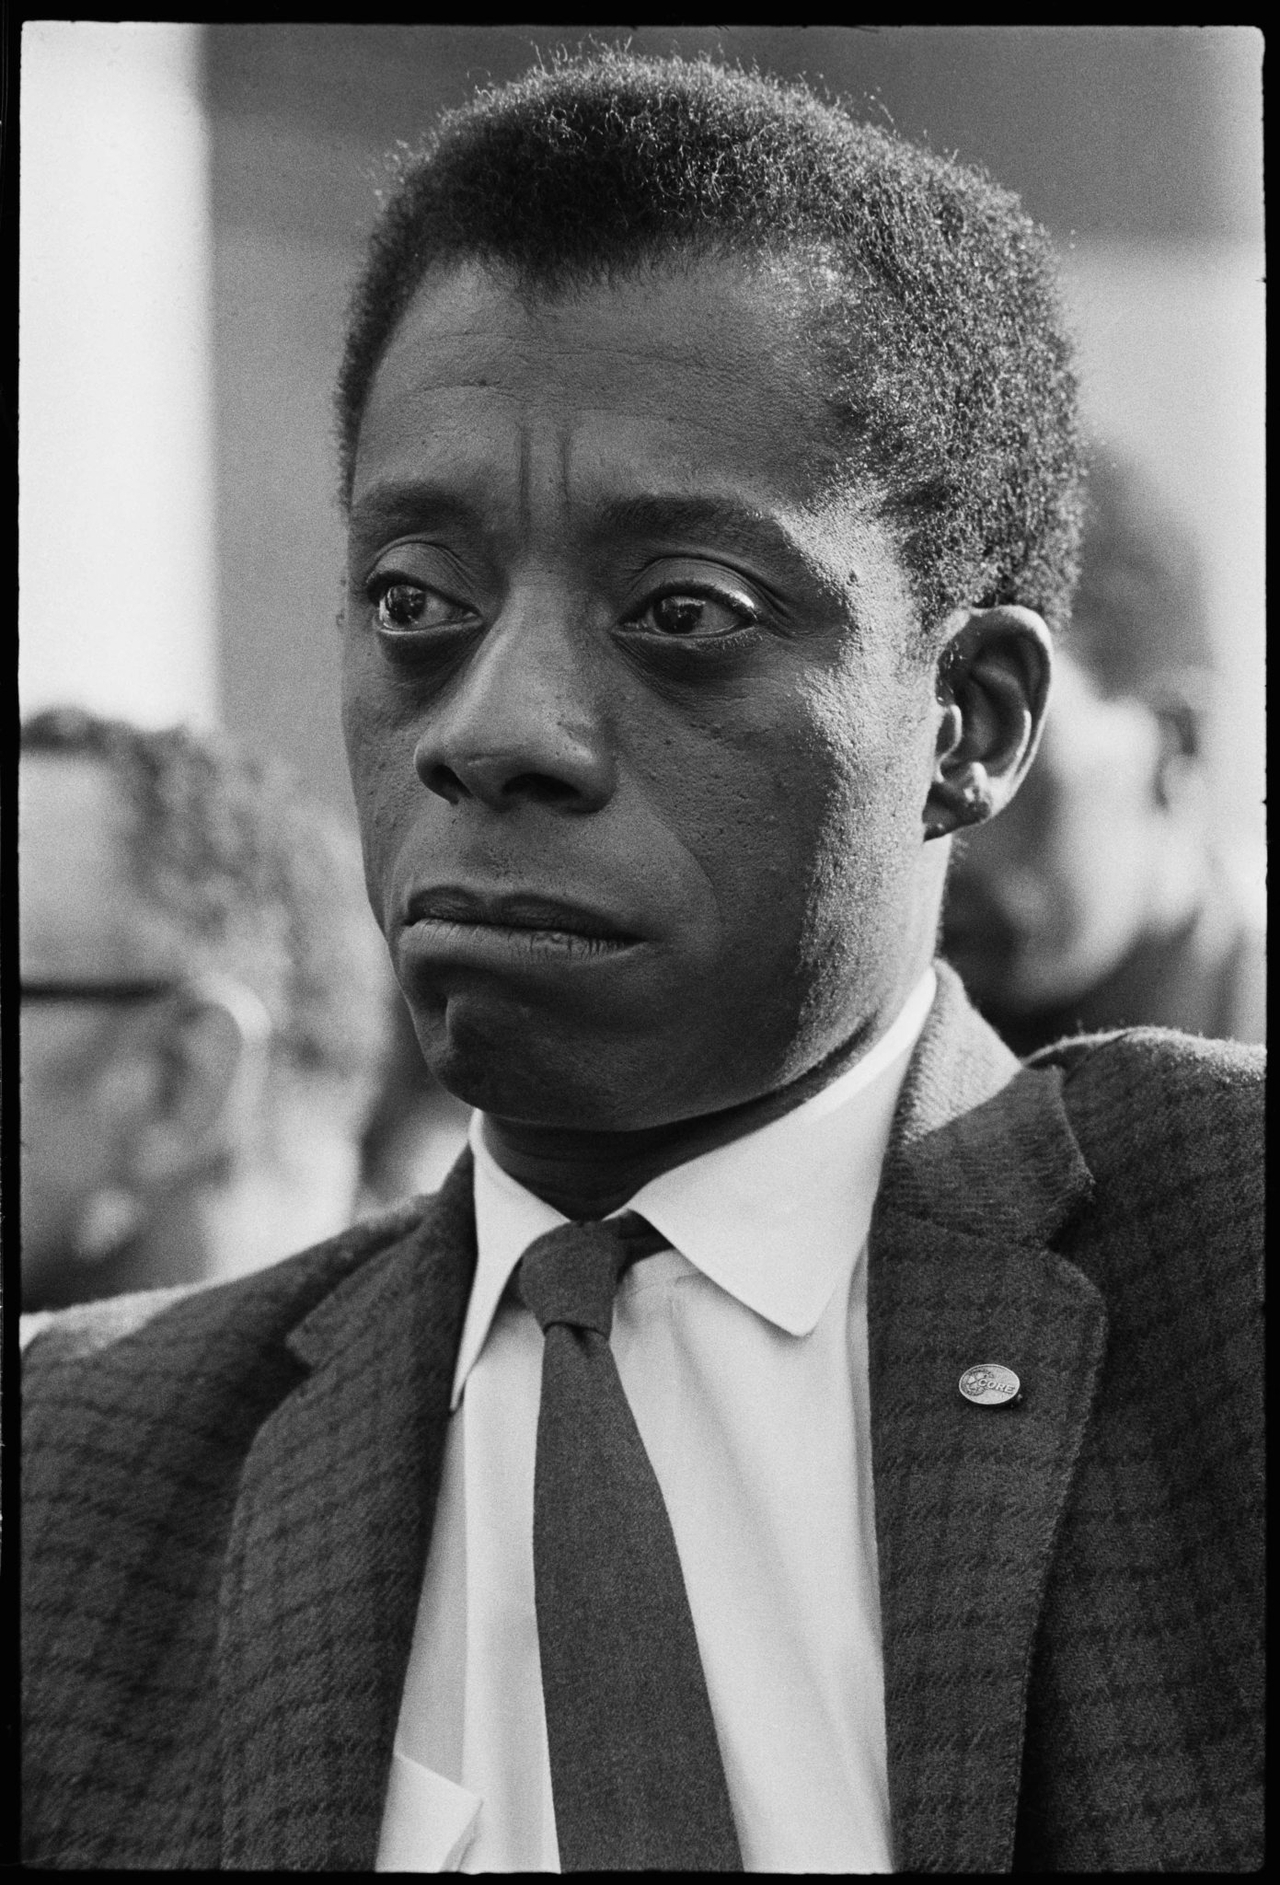  فیلم سینمایی I Am Not Your Negro با حضور James Baldwin